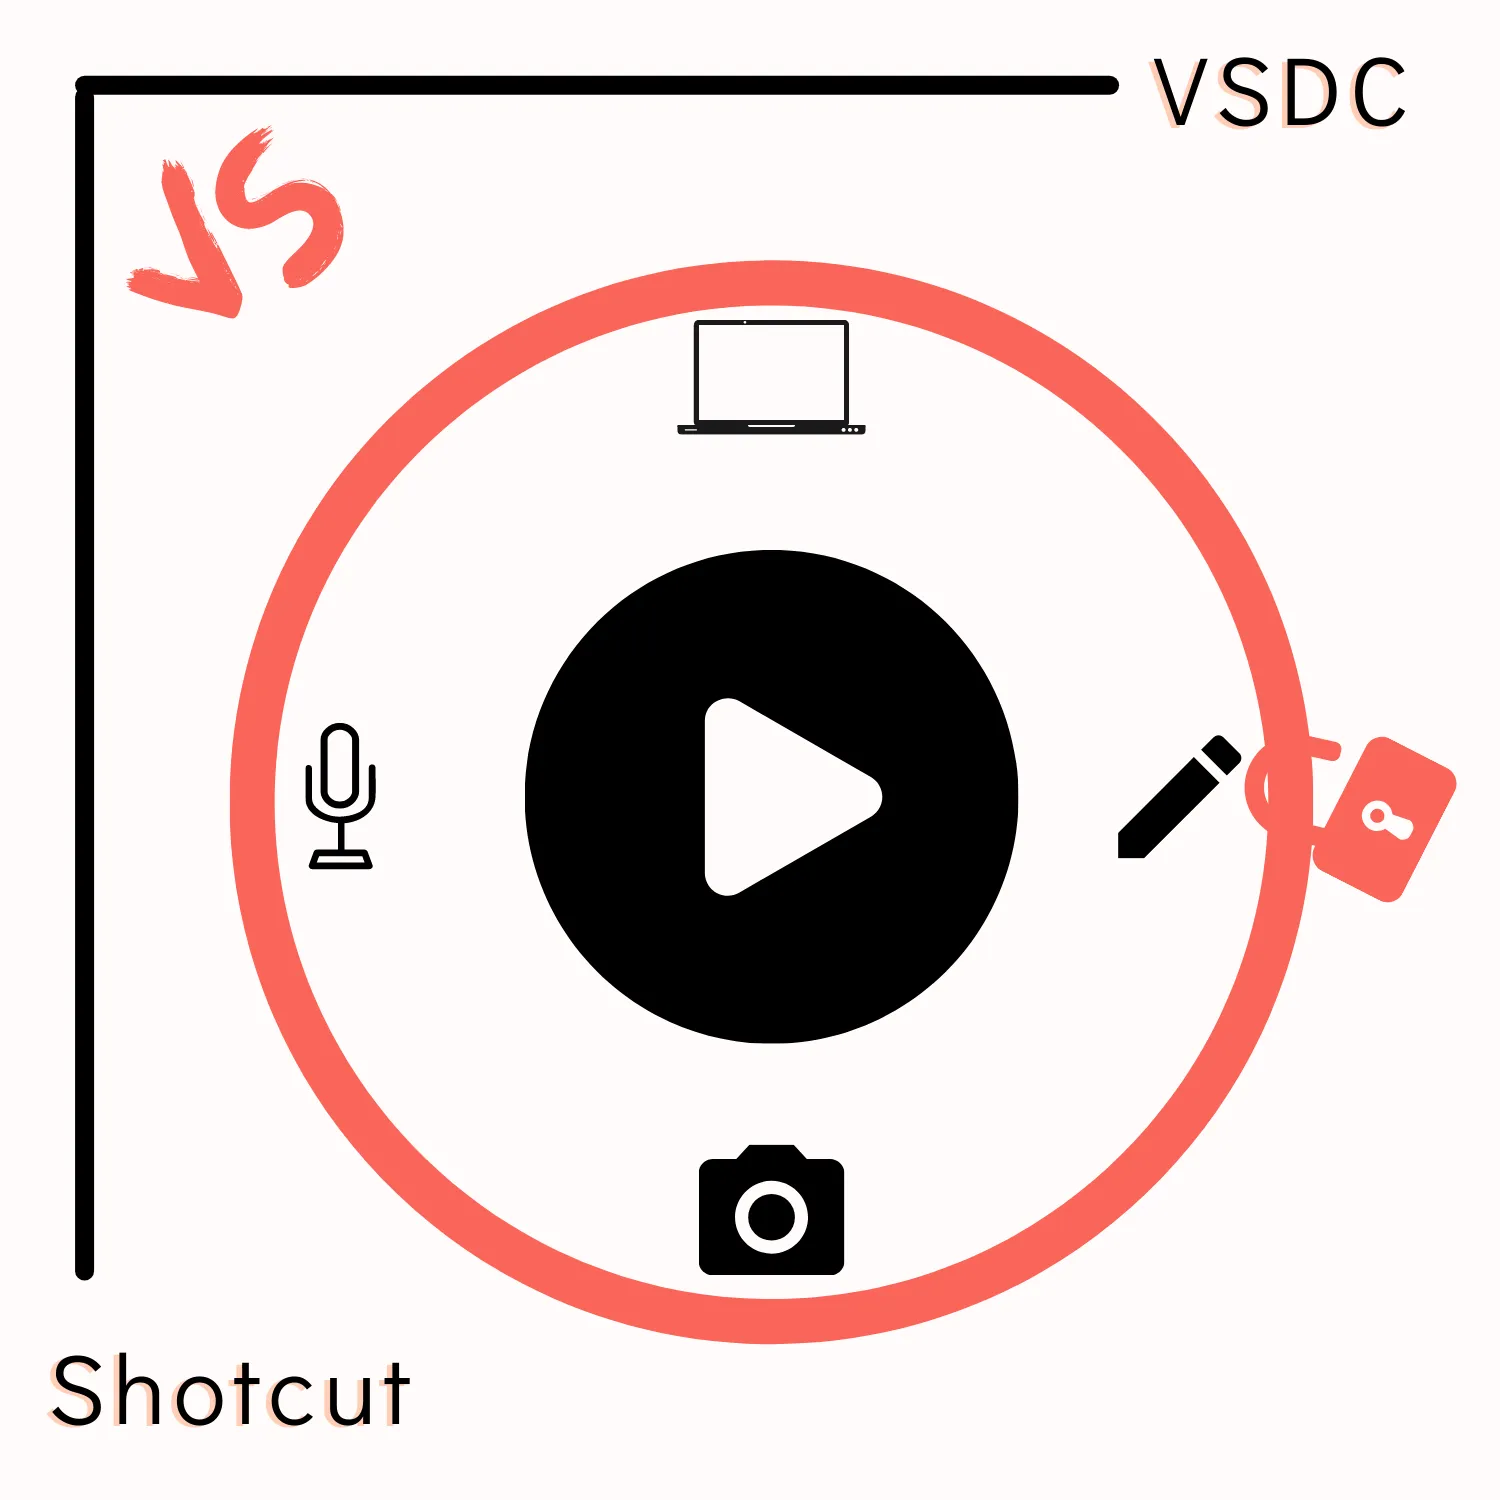 VSDC vs. Shotcut